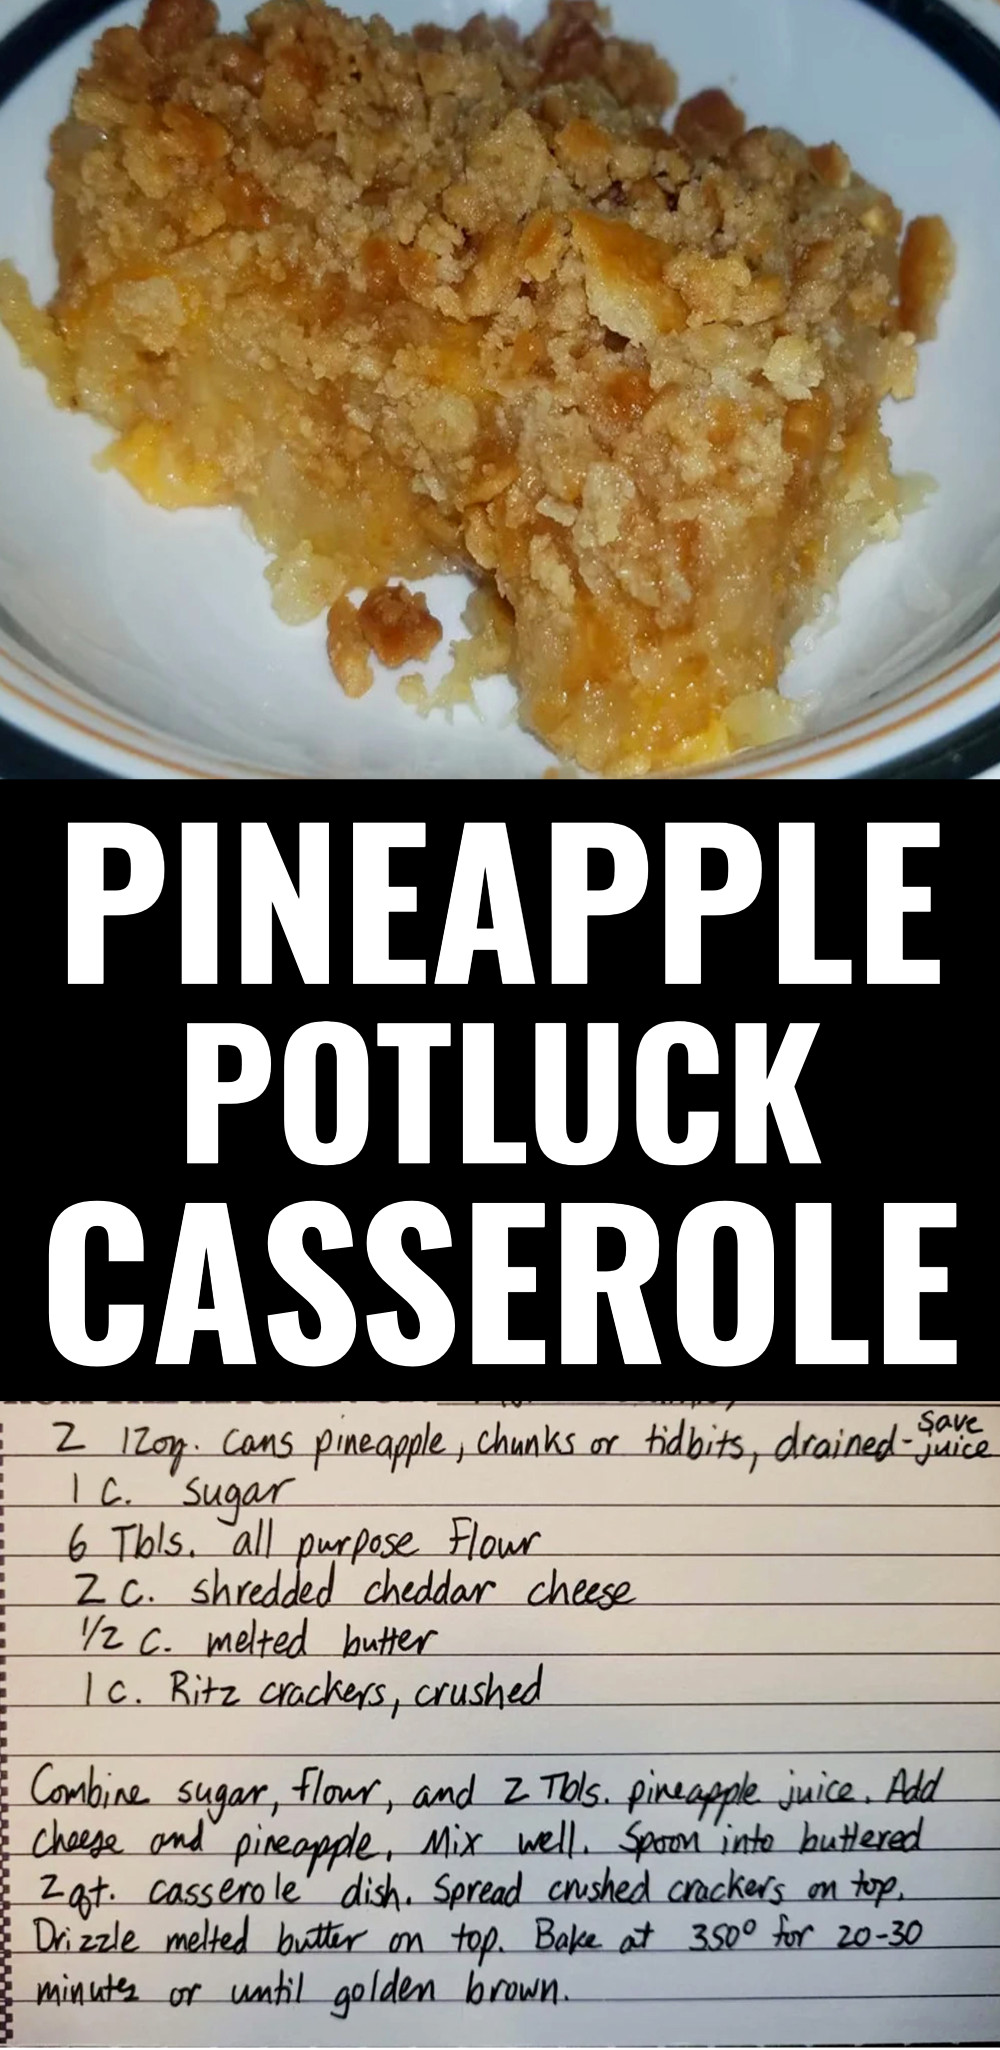 Pineapple Potluck Casserole